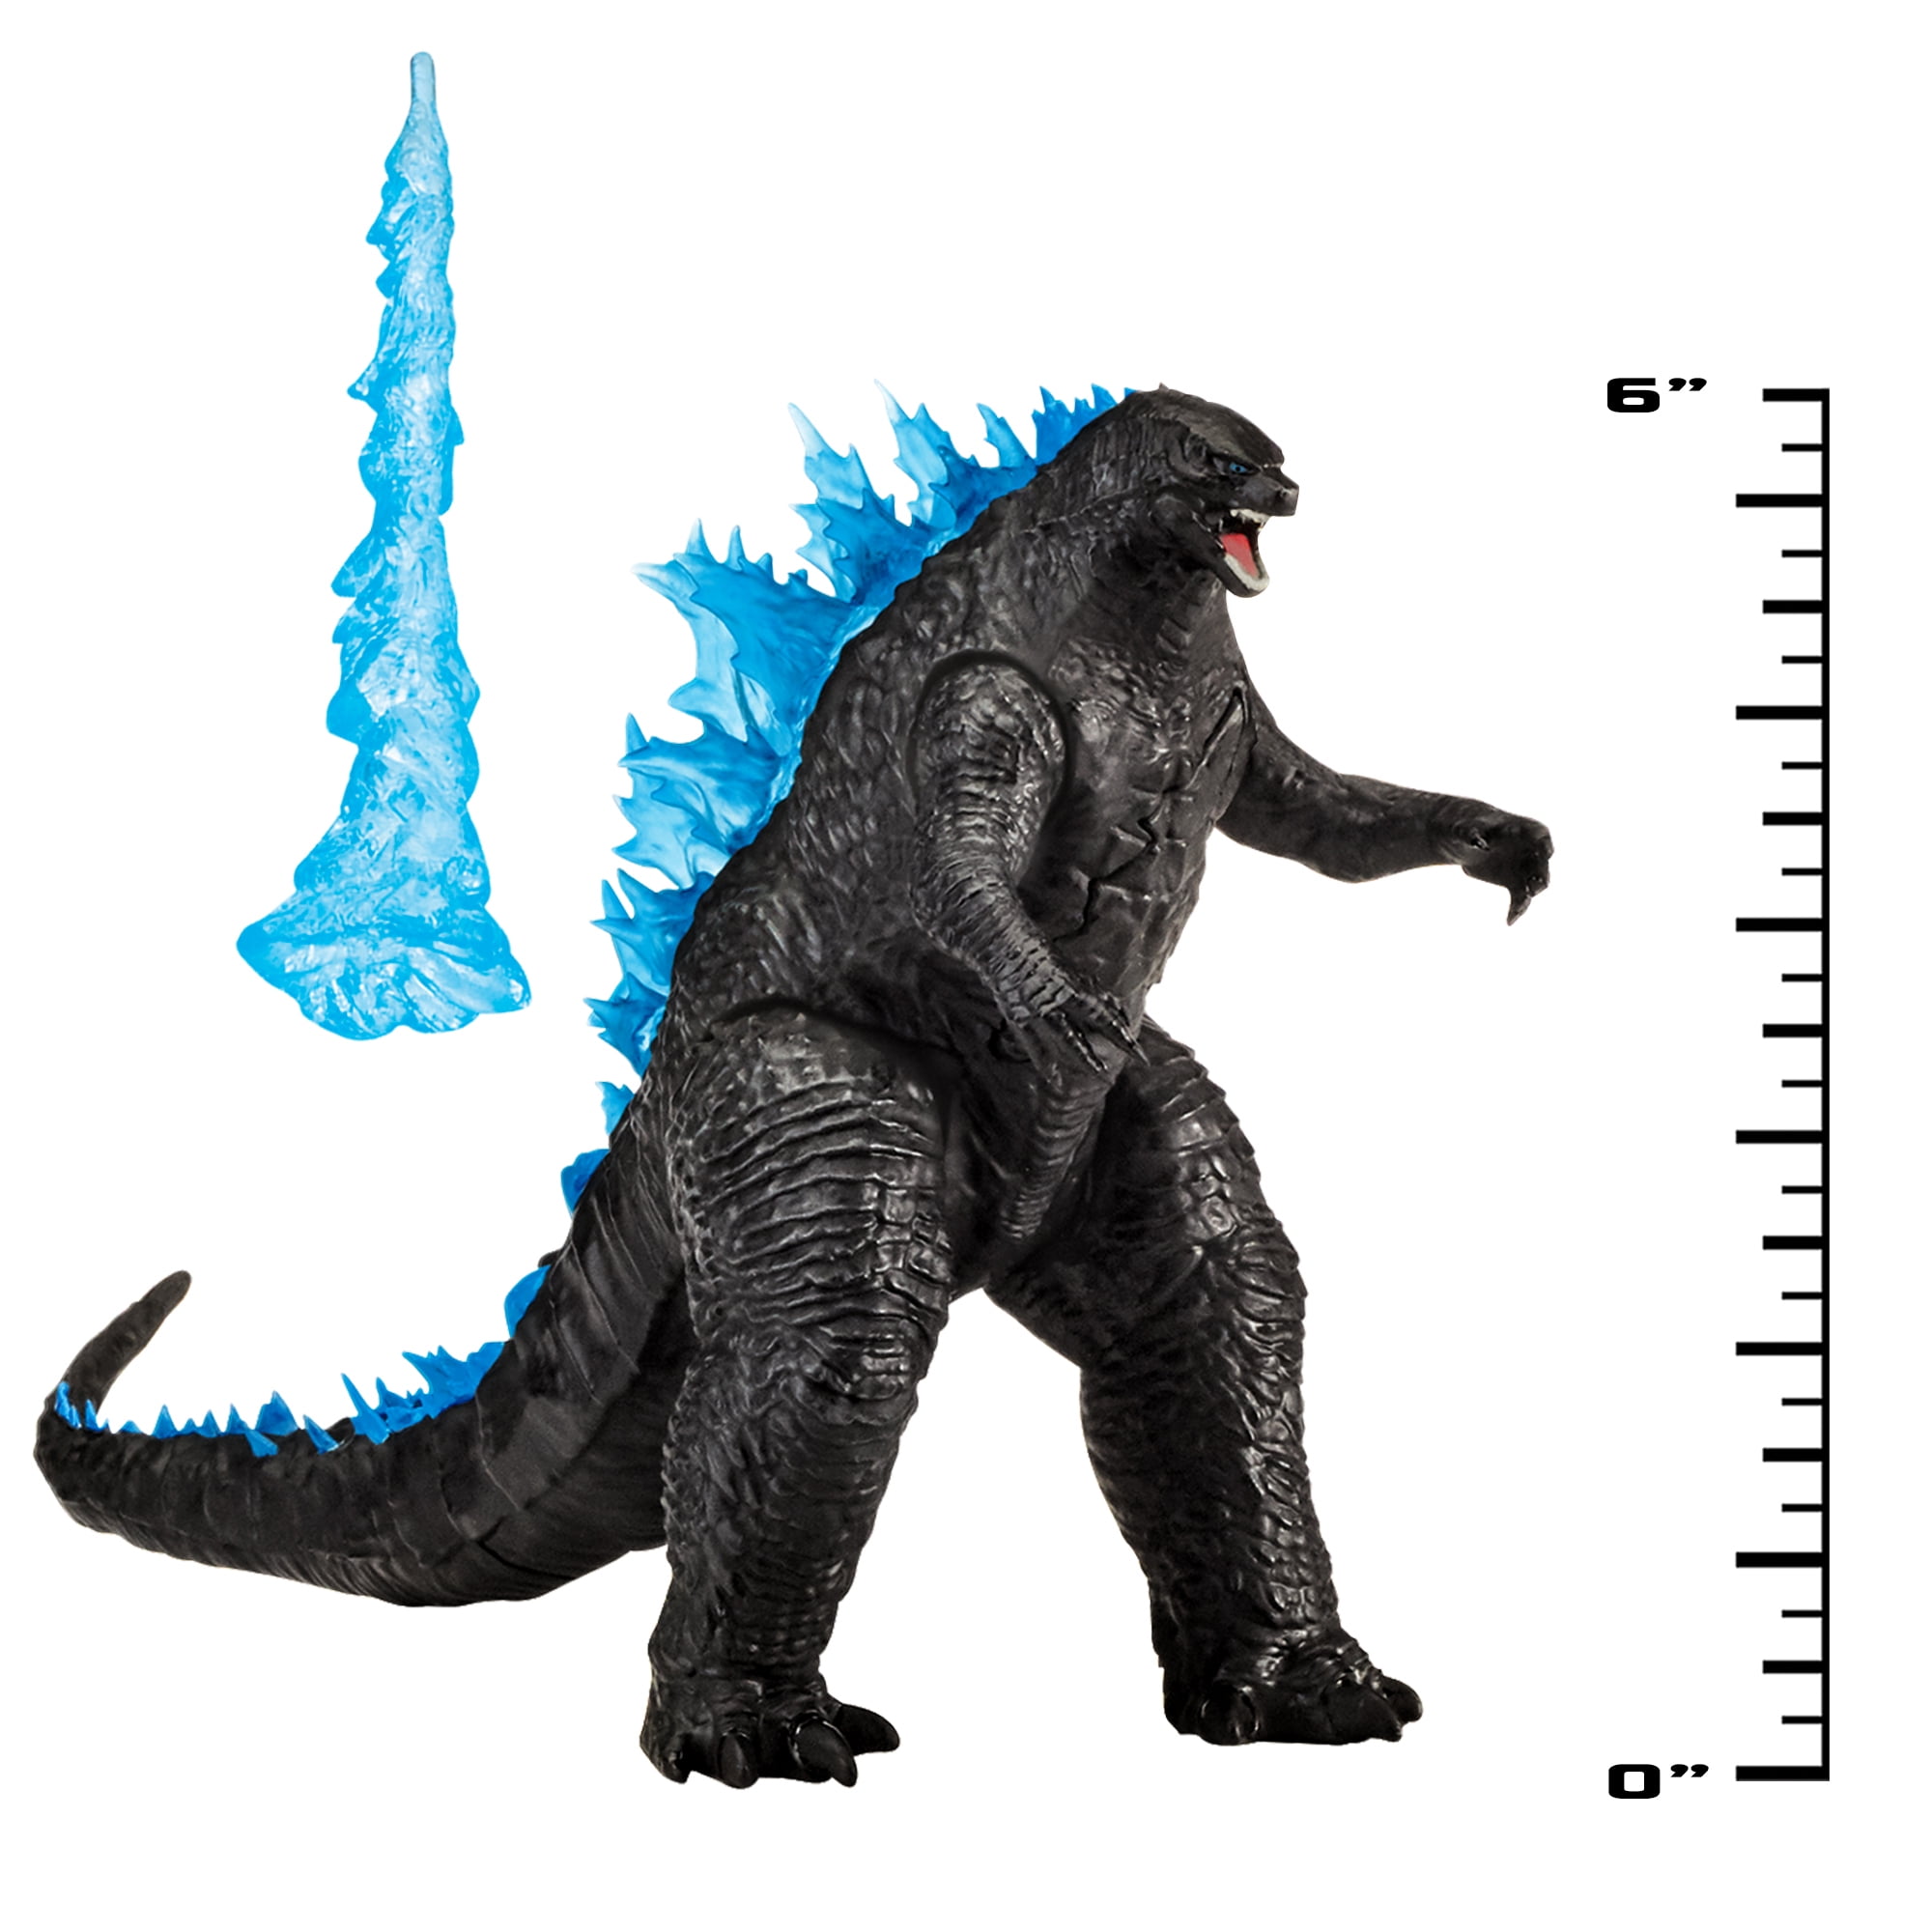 Godzilla vs Kong Godzilla & Kong Action Figure Set Lot of Two Playmates New 